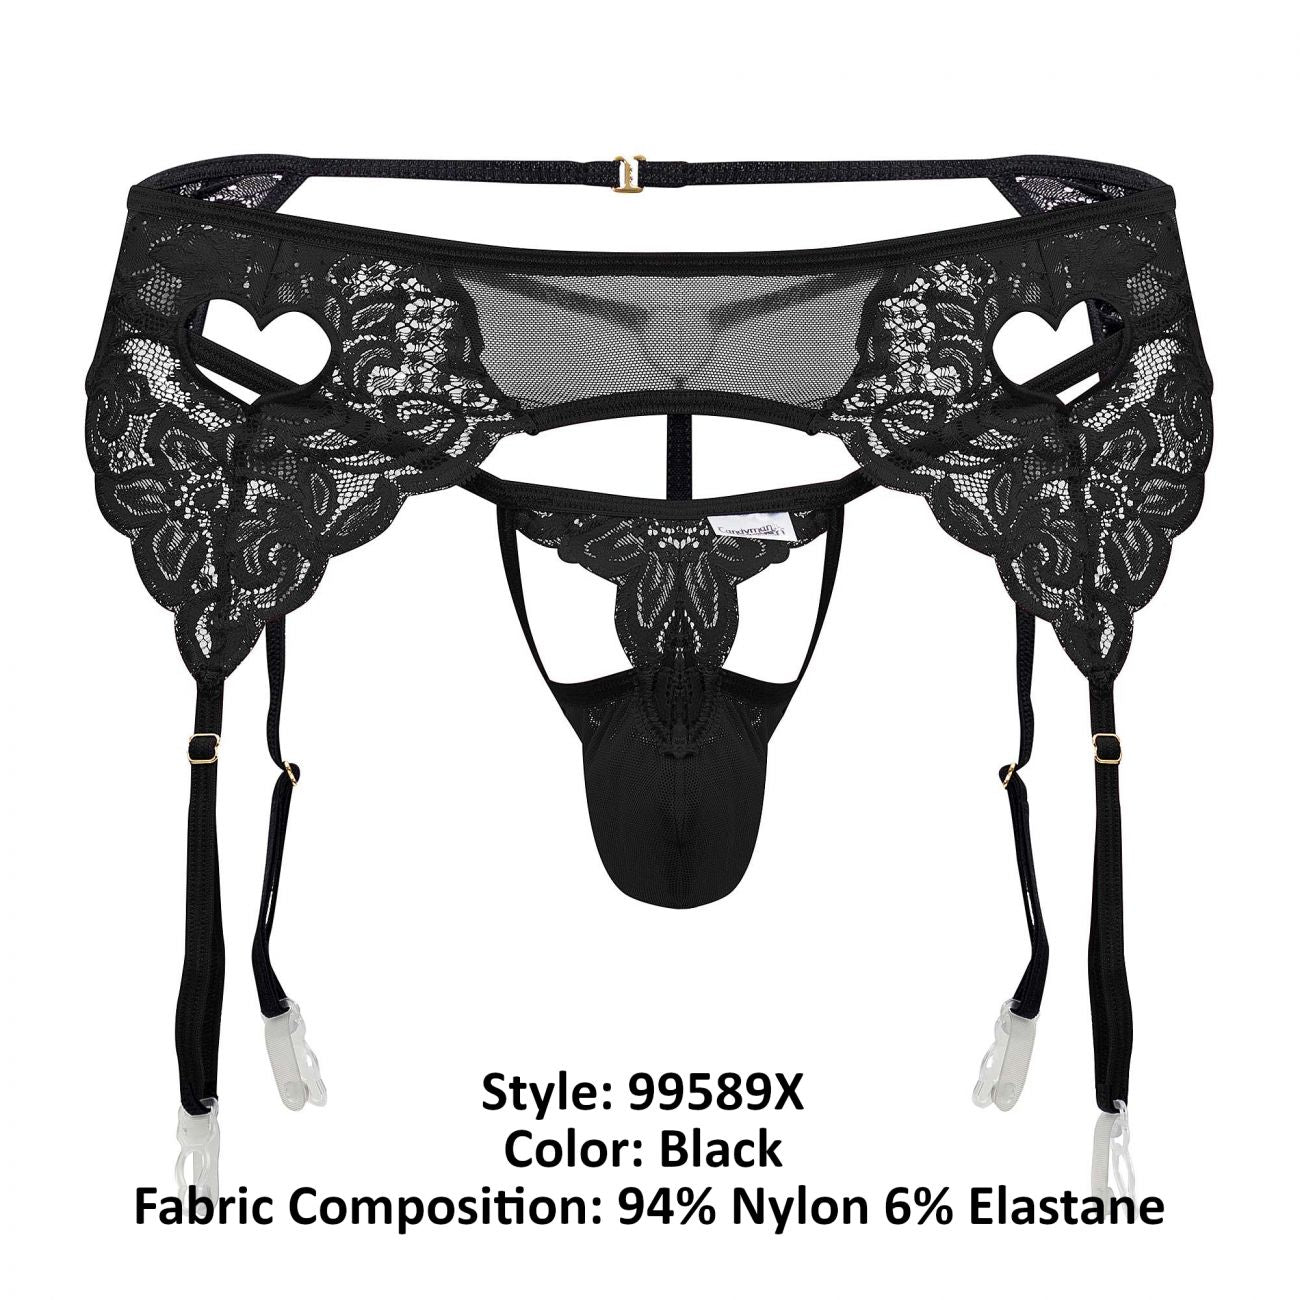 CandyMan 99589X Lace Garter G-String Black Plus Sizes